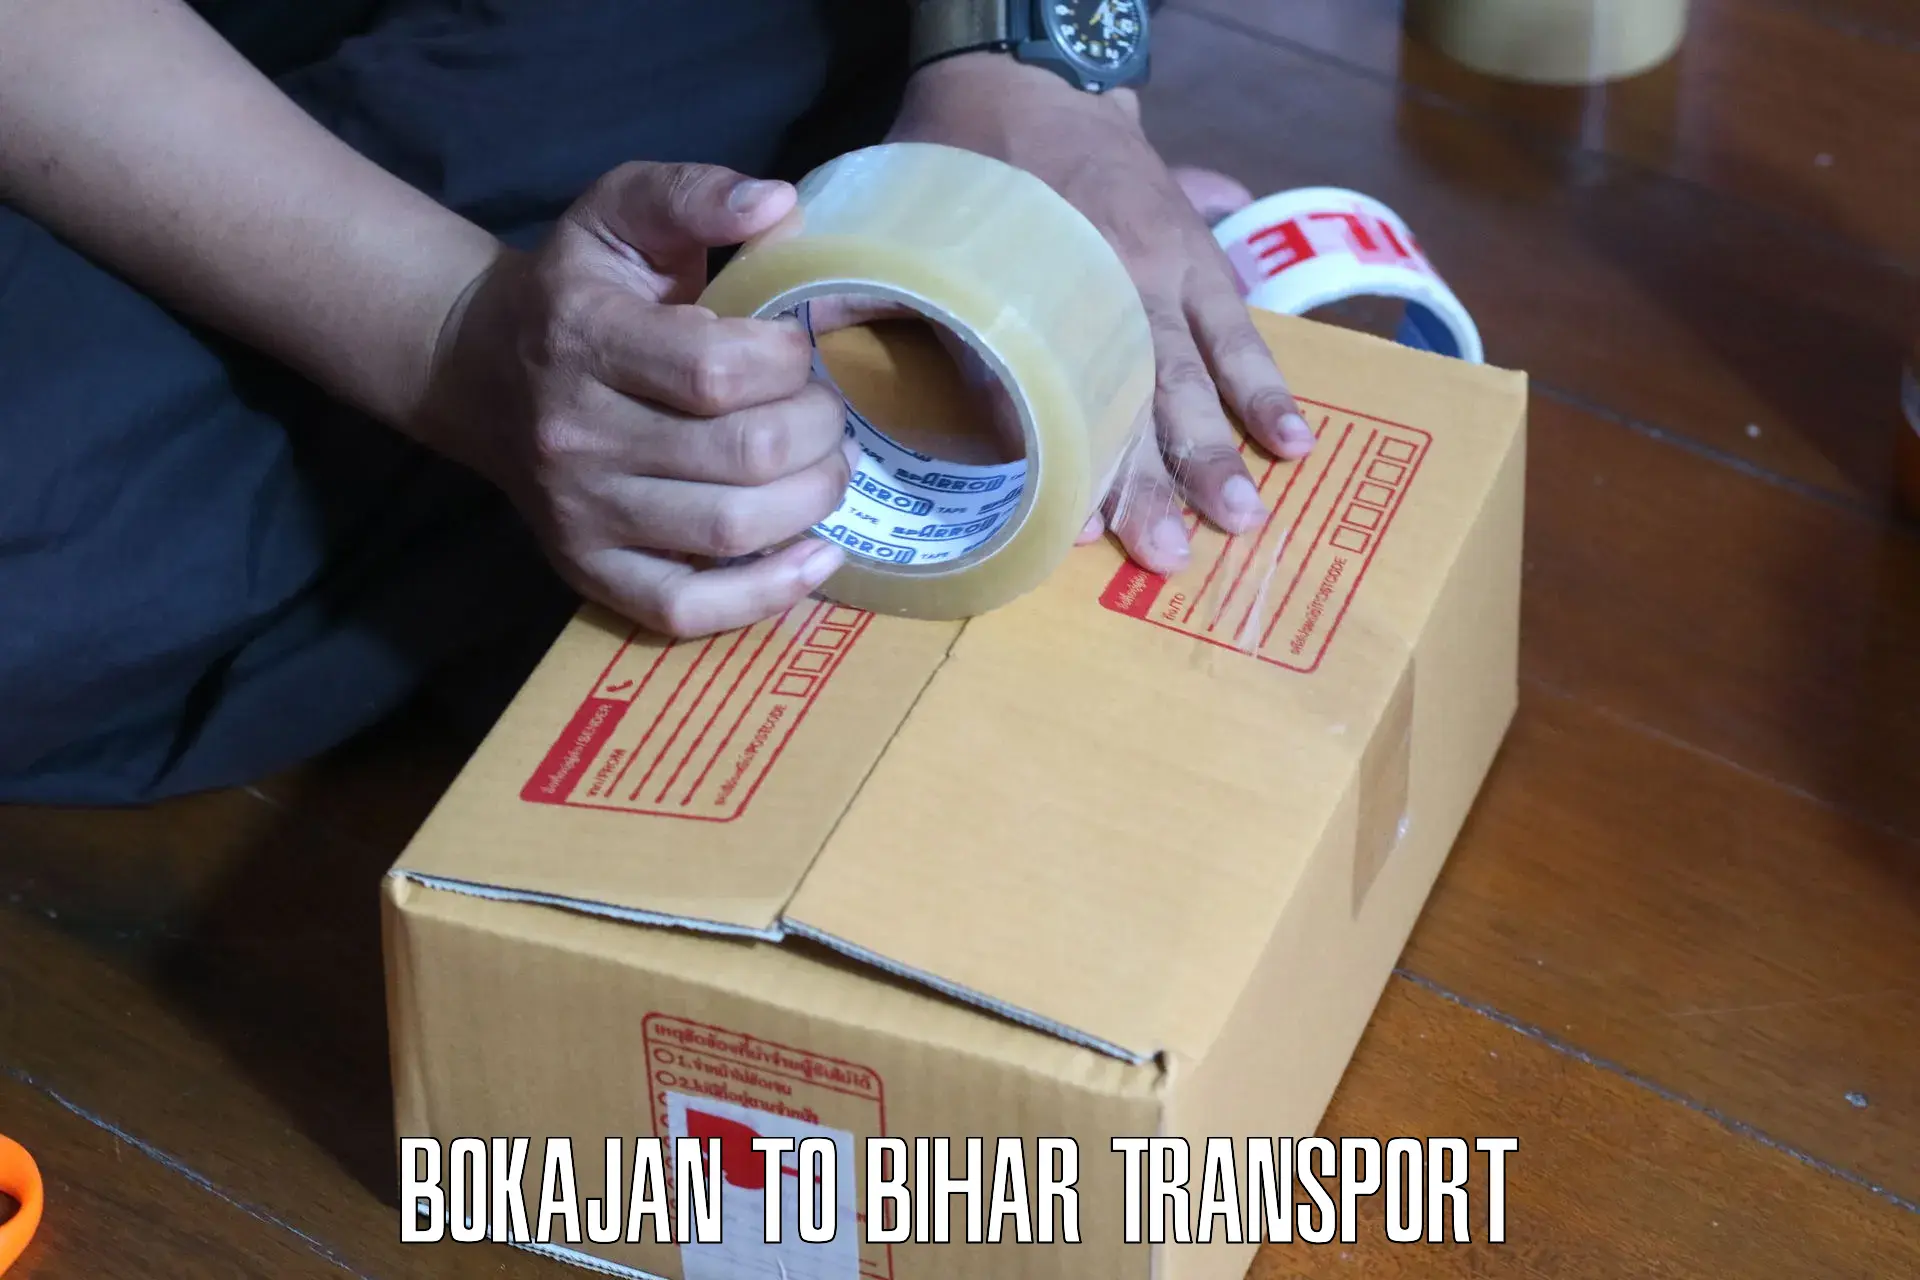 Truck transport companies in India Bokajan to Kishunganj